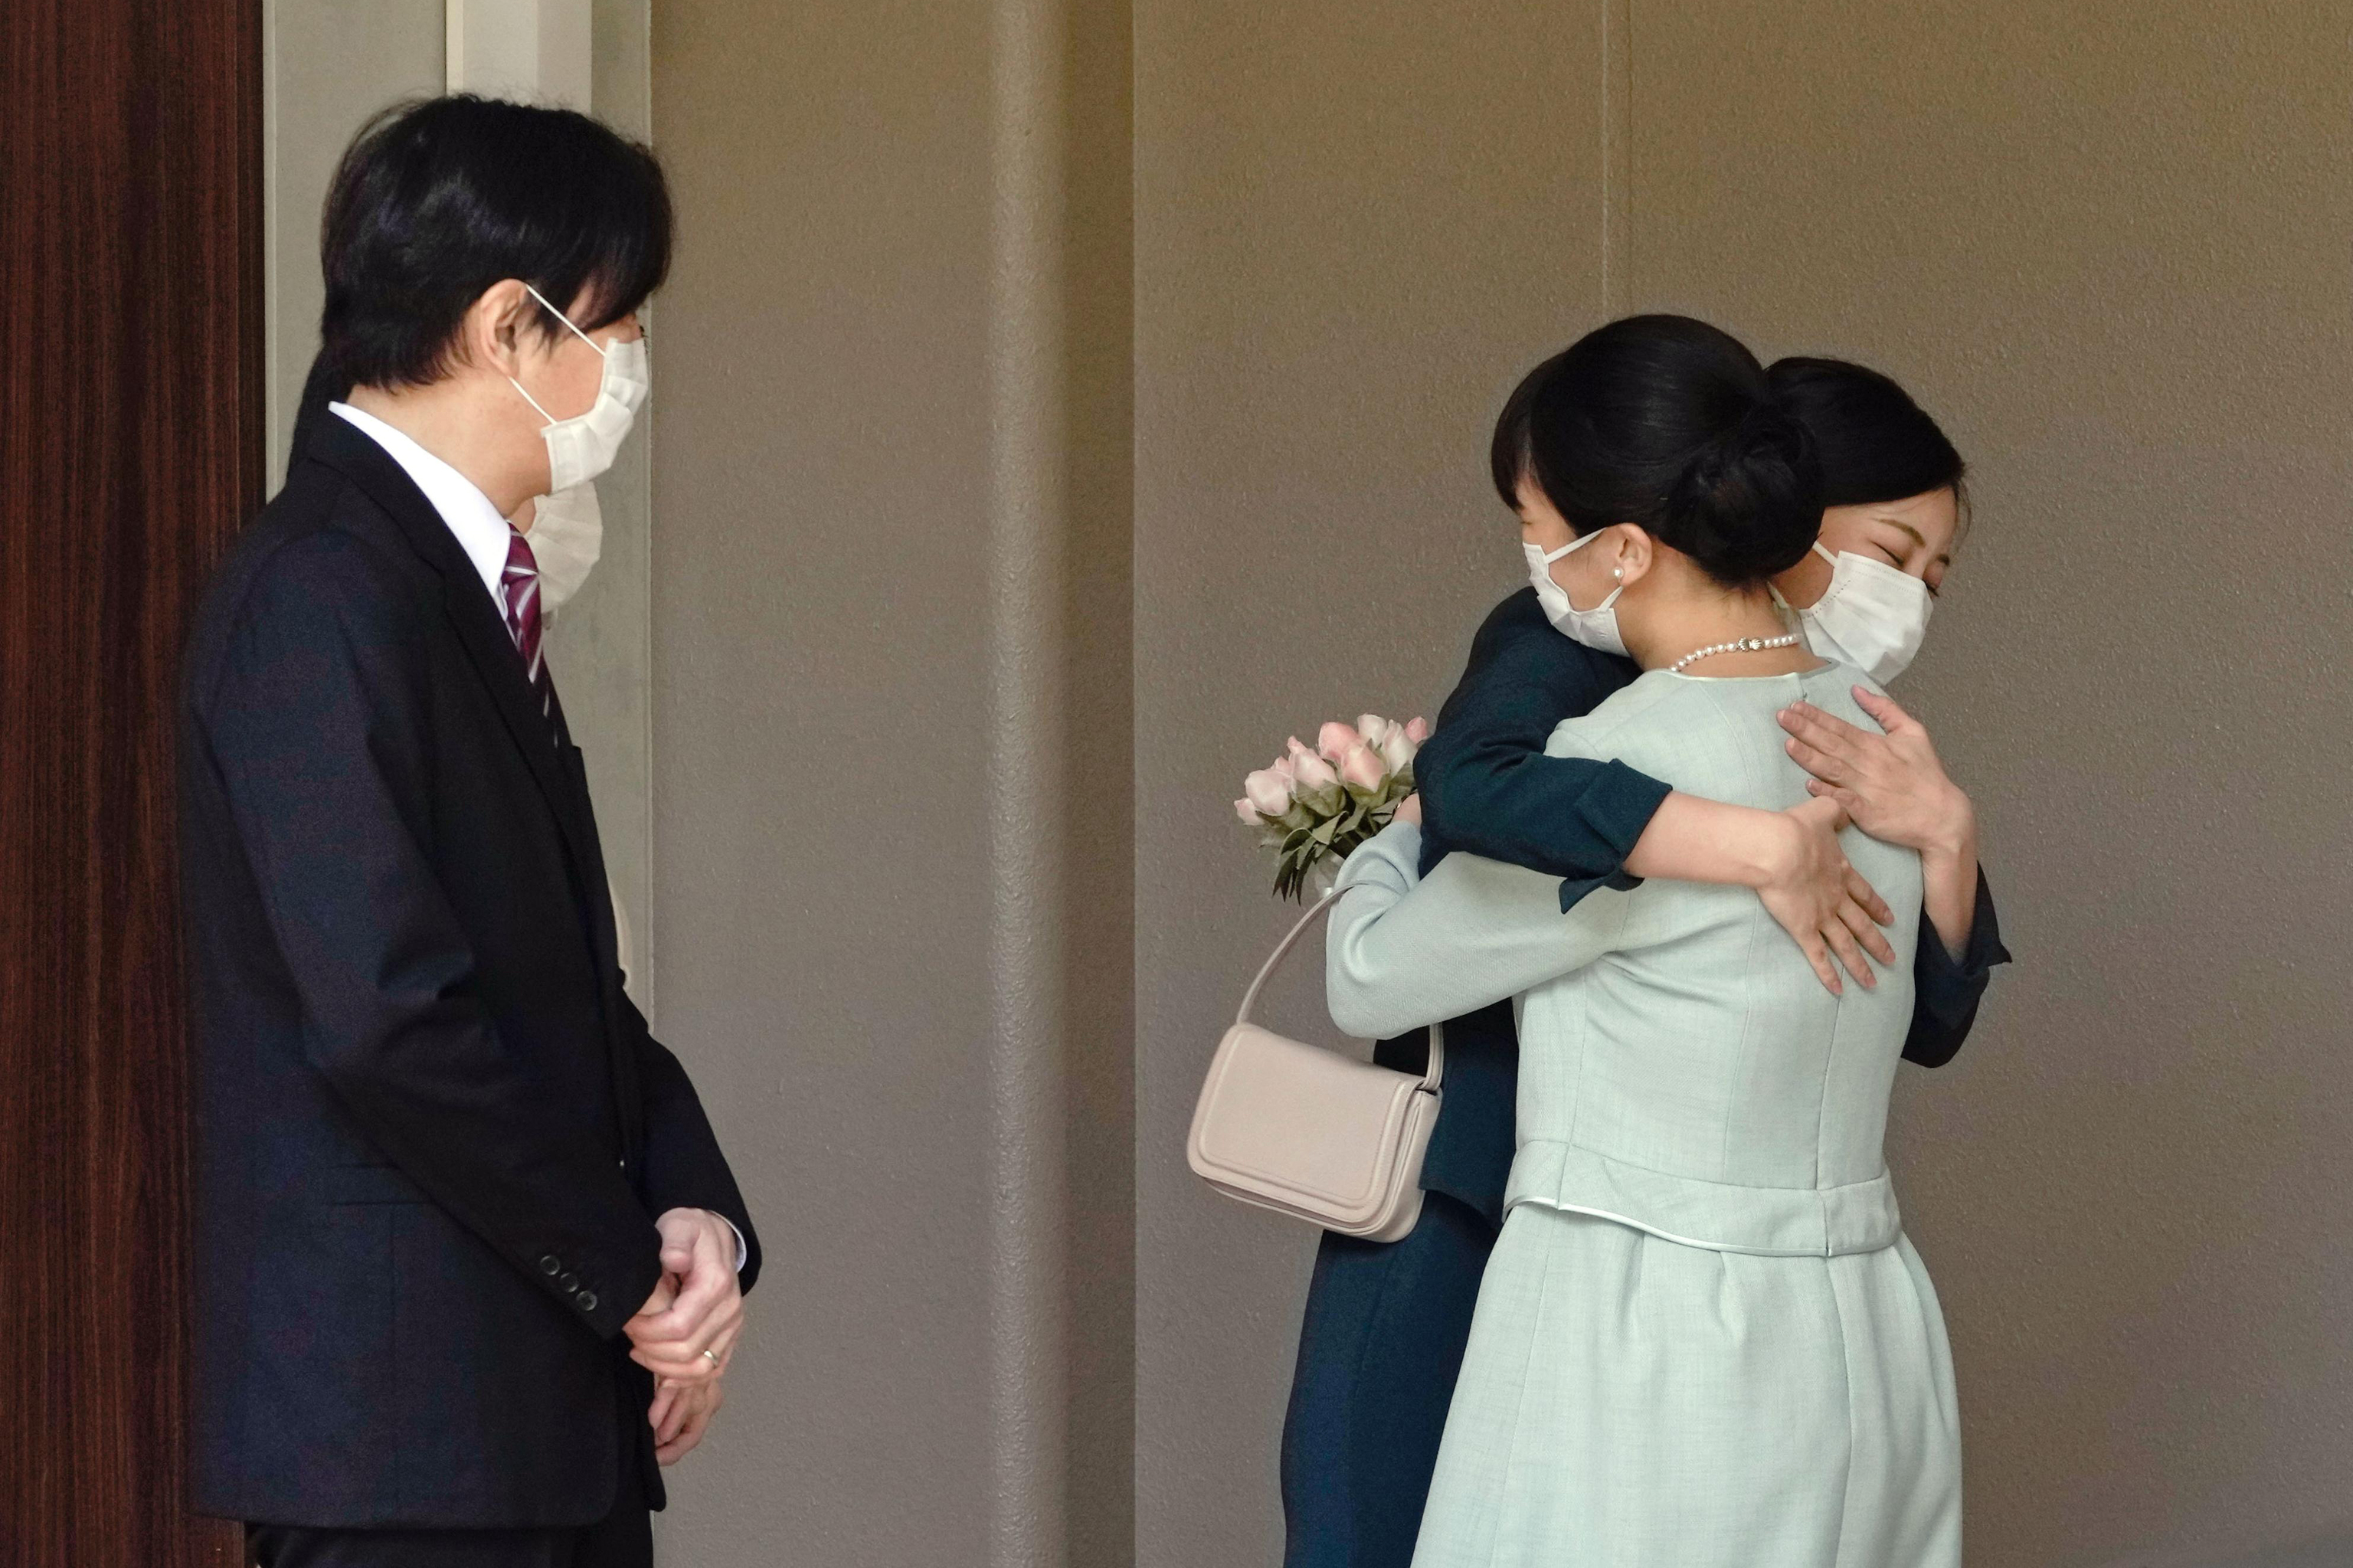 La priincesa Mako abraza a su hermana la princesa Kako, ante la mirada de sus padres los príncipes herederos Akishino y Kiko, momentos antes de abandonar su casa para casarse con su prometido.